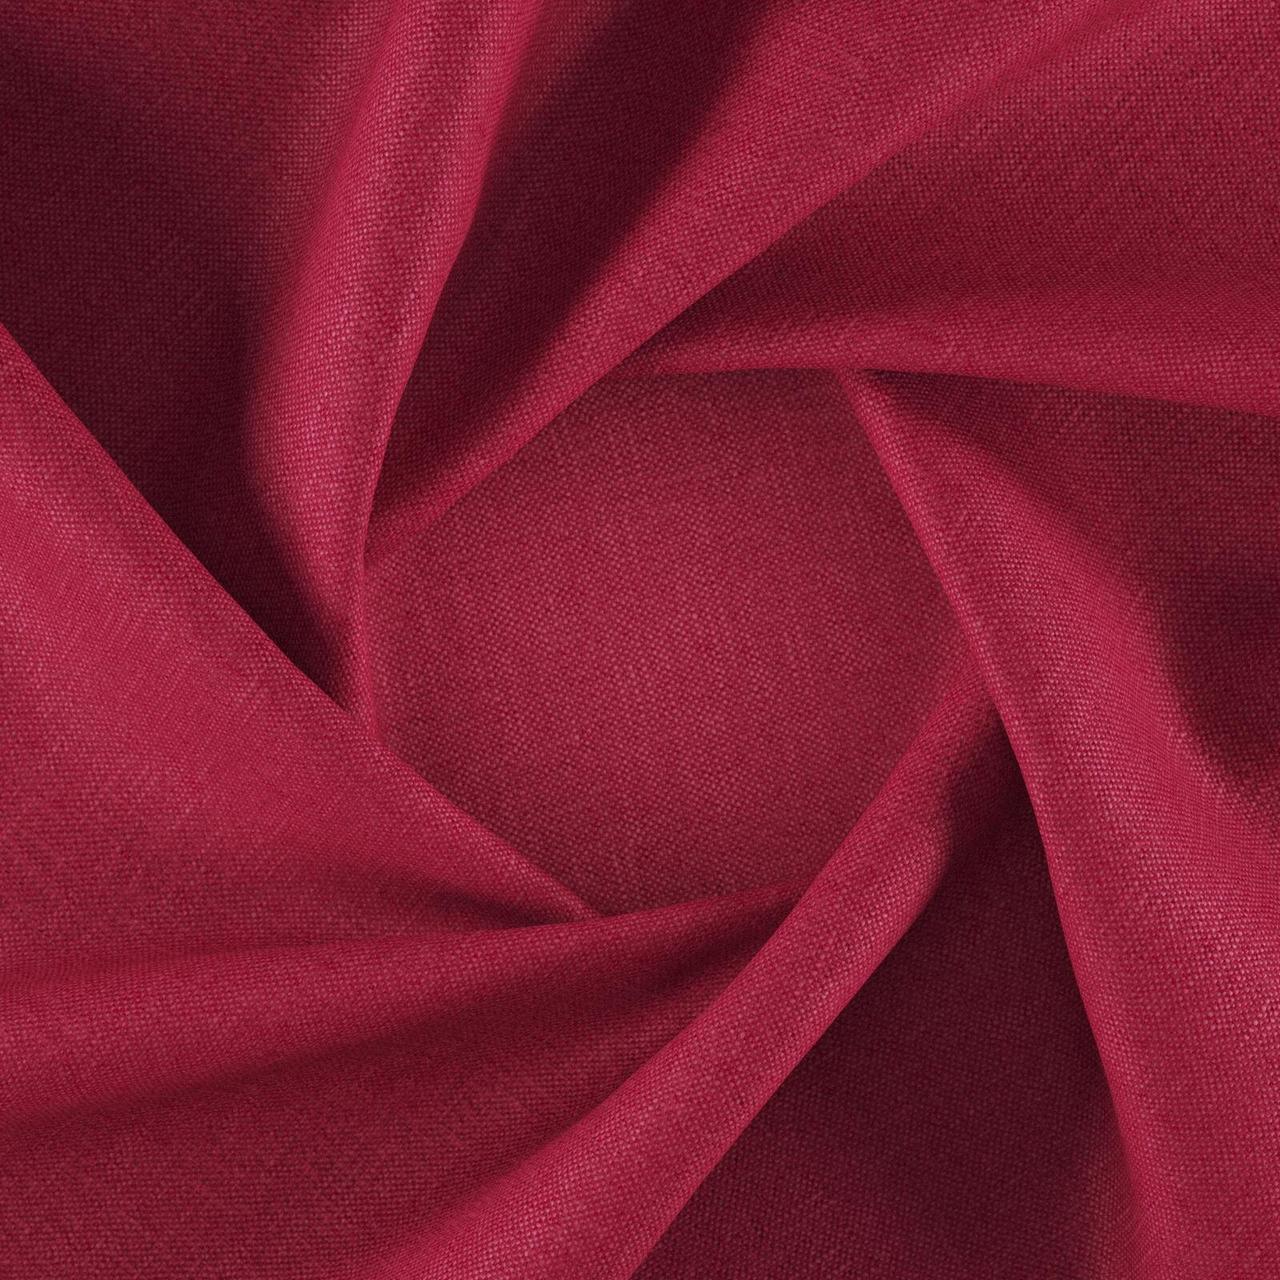 Тканина для перетяжки м'яких меблів шеніл Перфекто (Perfecto) рожевого кольору